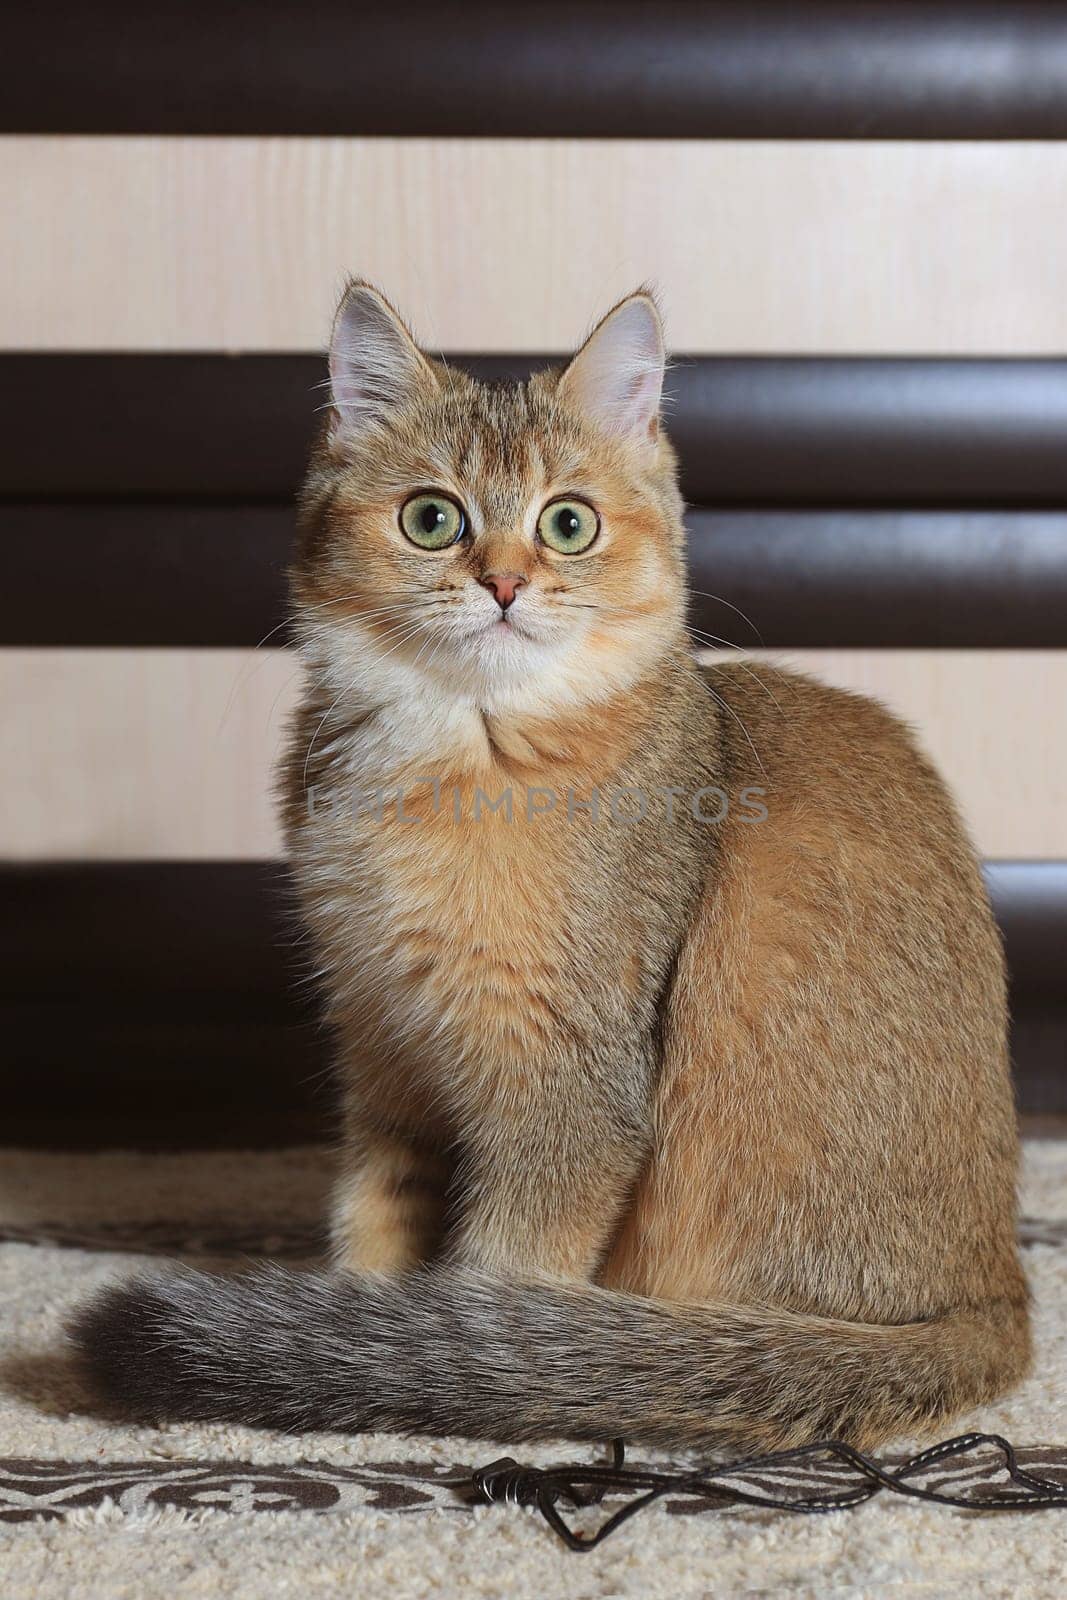 Surprised British cat at home